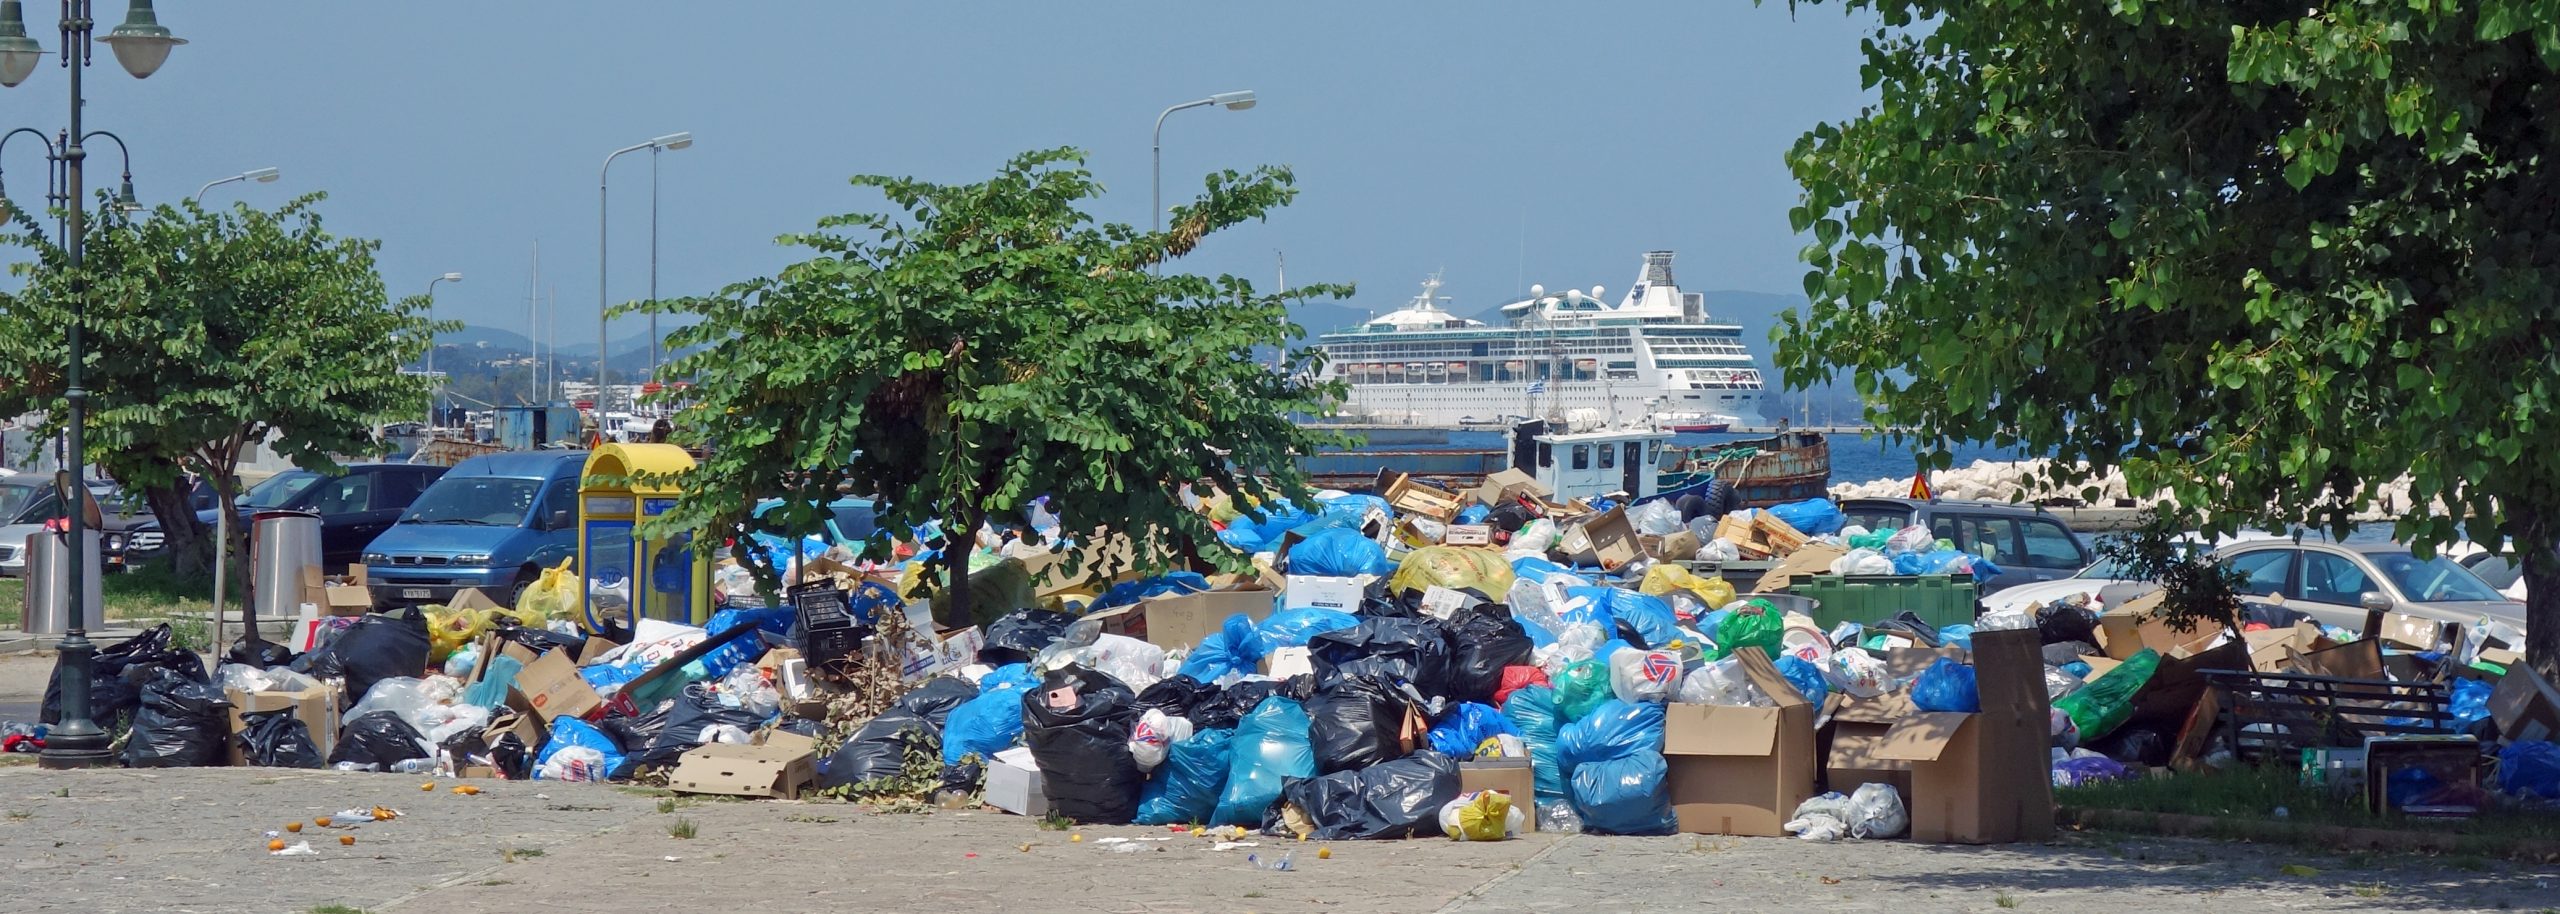 Κέρκυρα: Διαδικασίες εξπρές για να αναλάβει ιδιώτης τα σκουπίδια